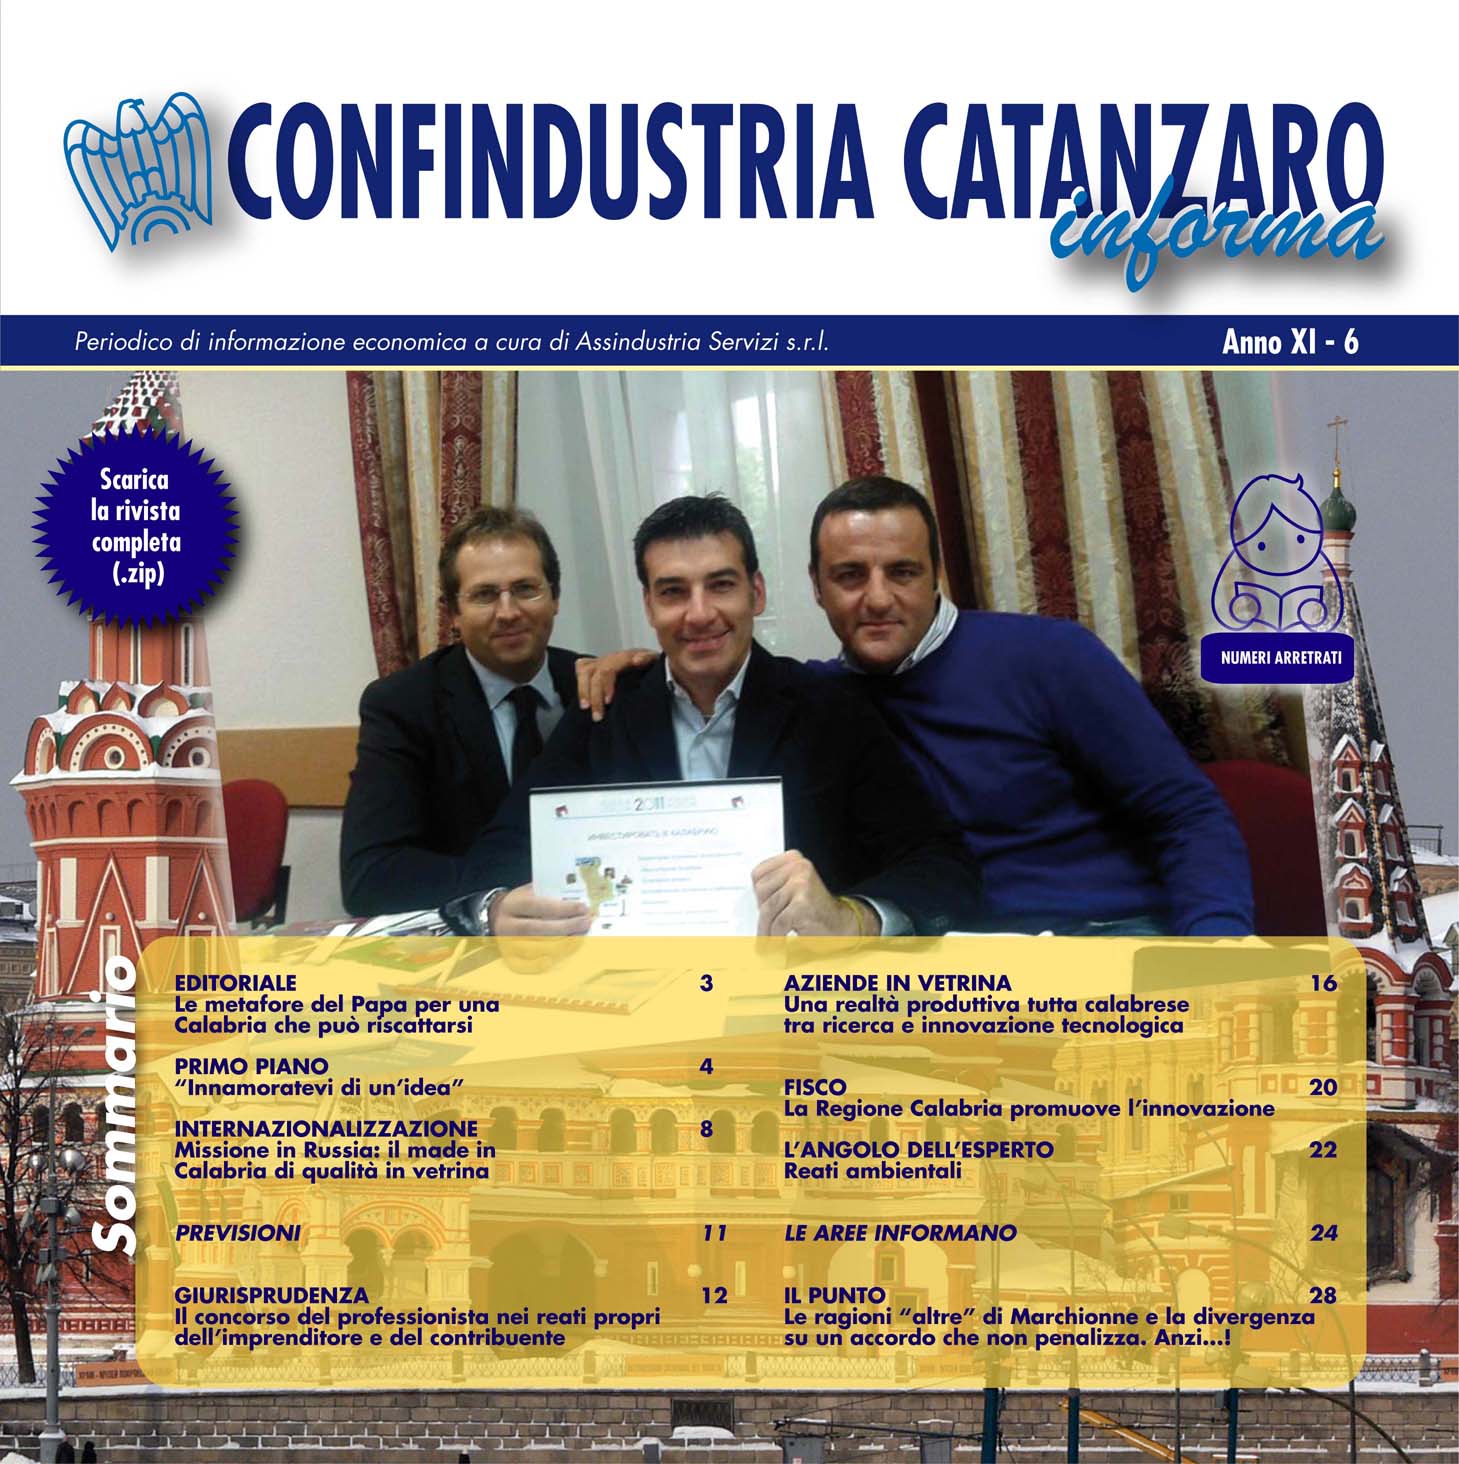 Confindustria Catanzaro Informa. Periodico a cura di Assindustria Servizi.